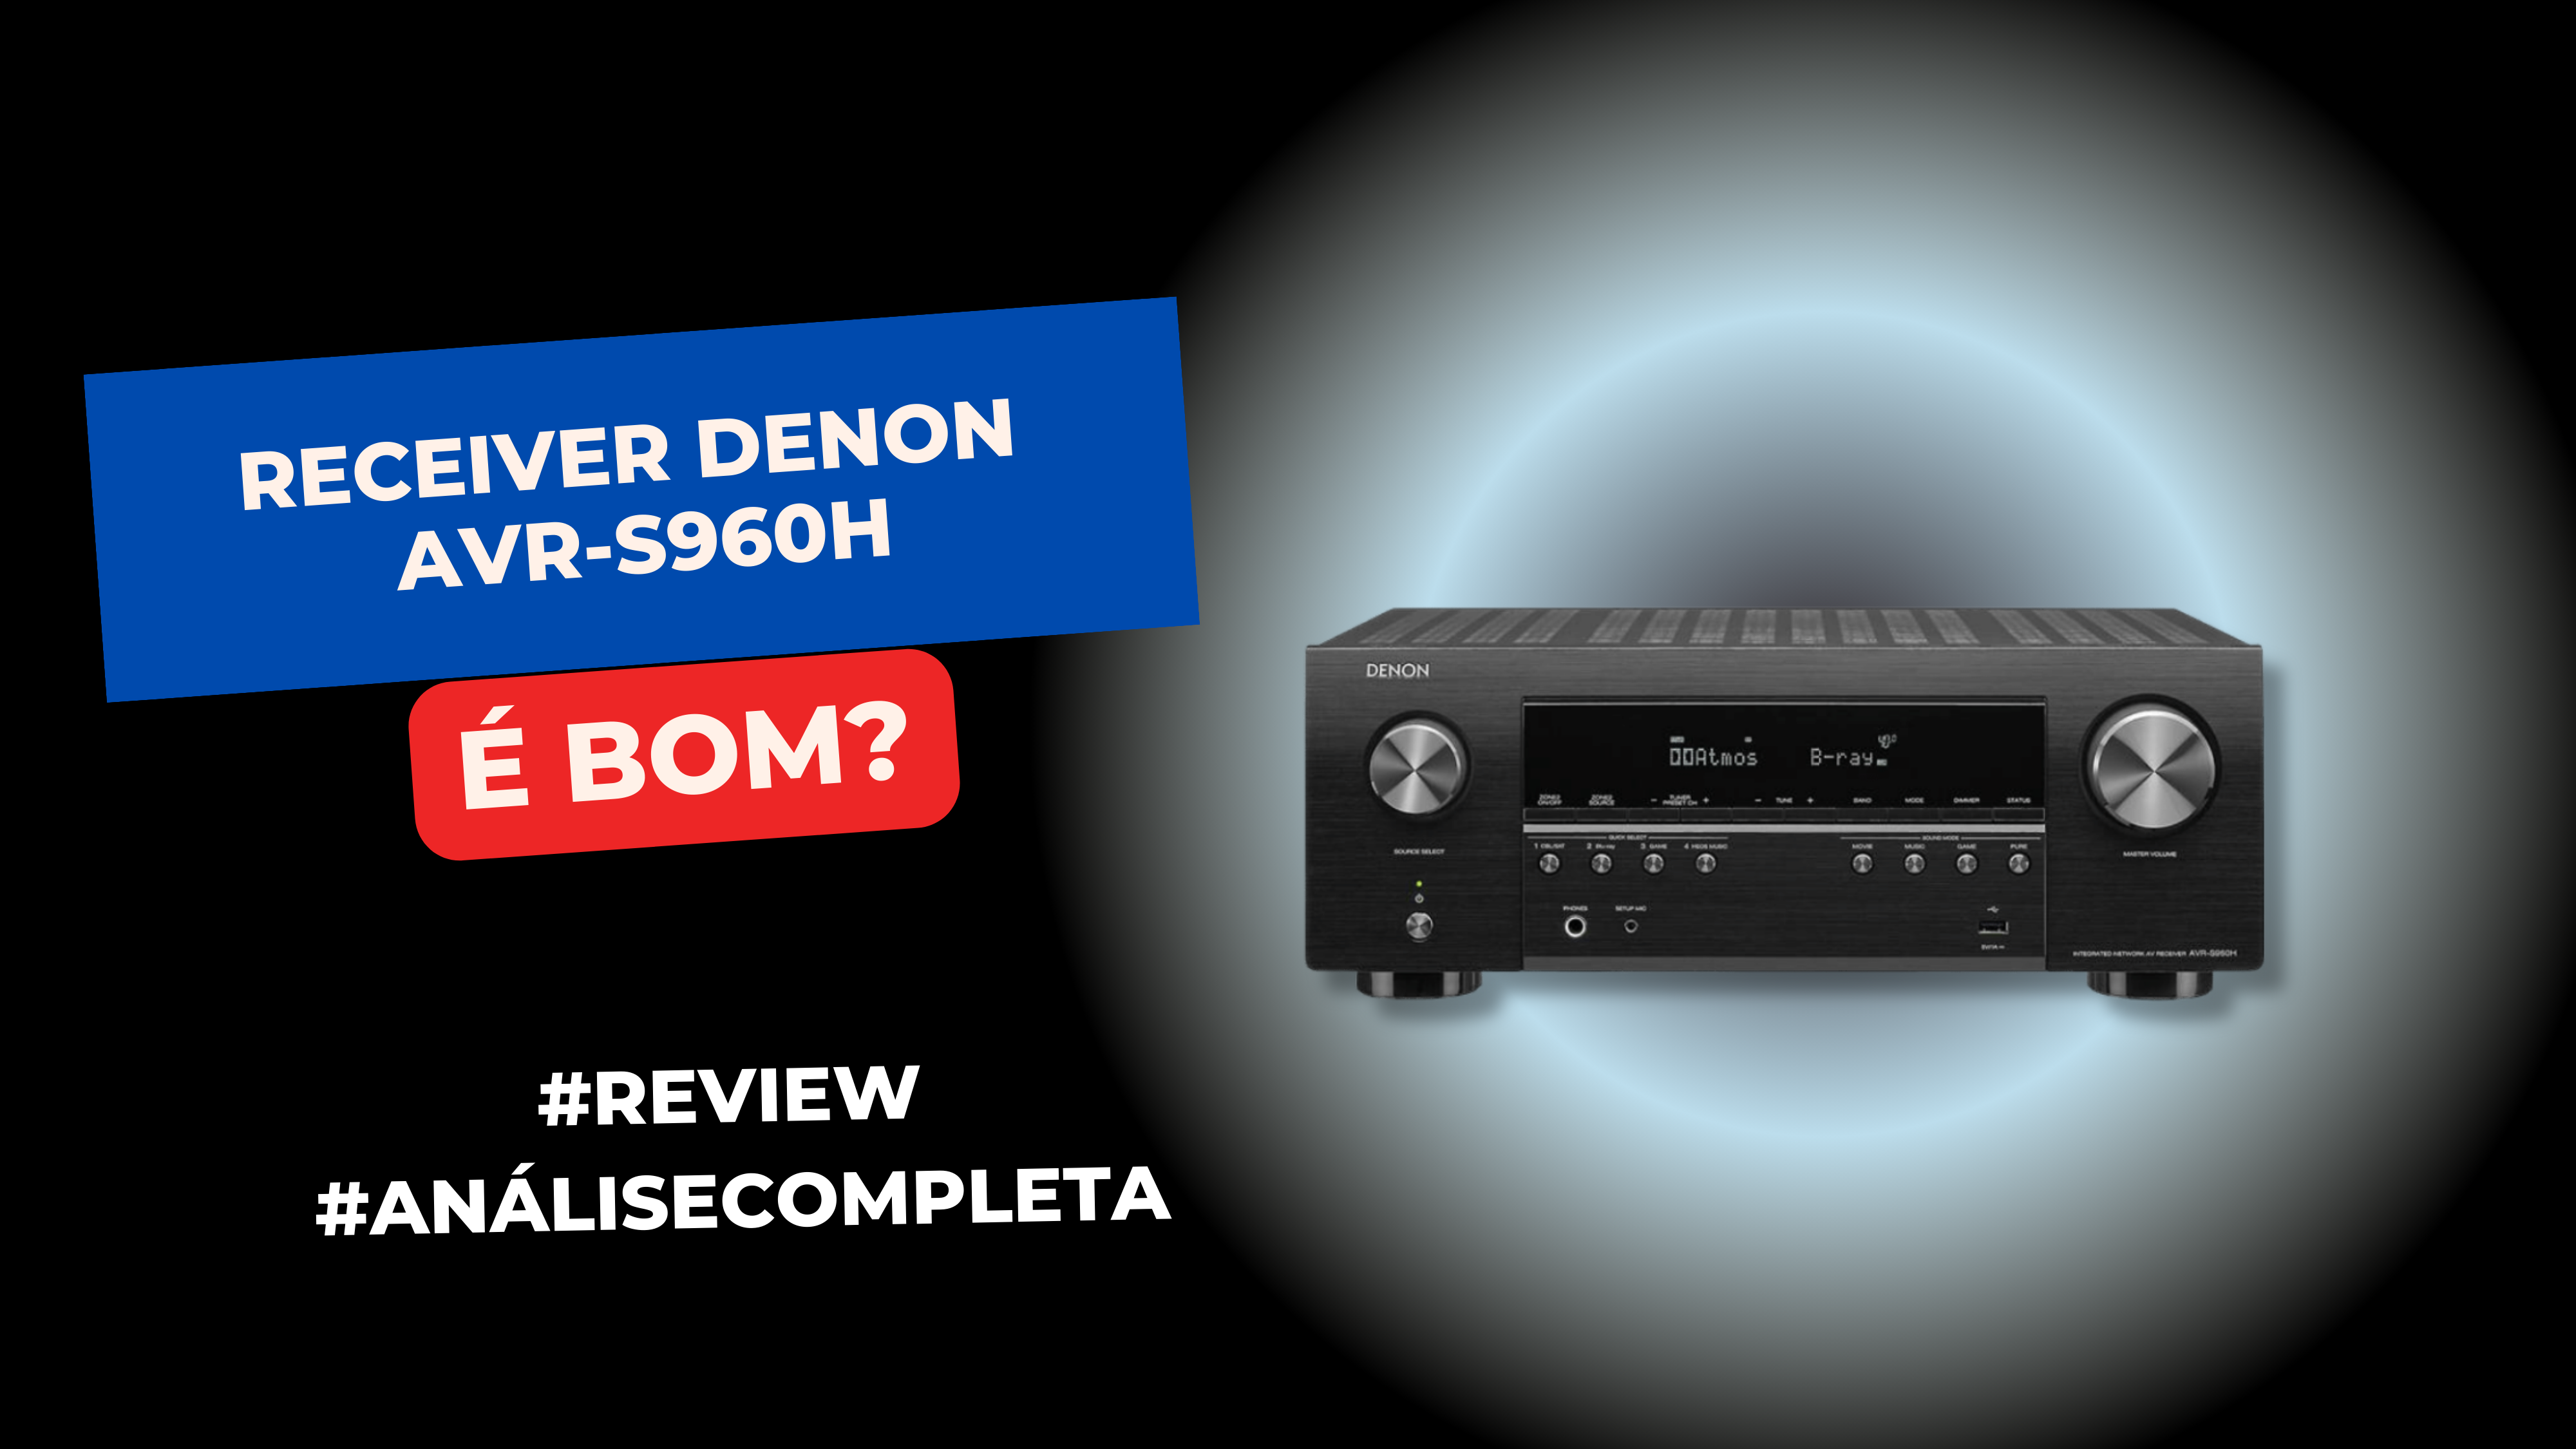 Receiver Denon AVR-S960H